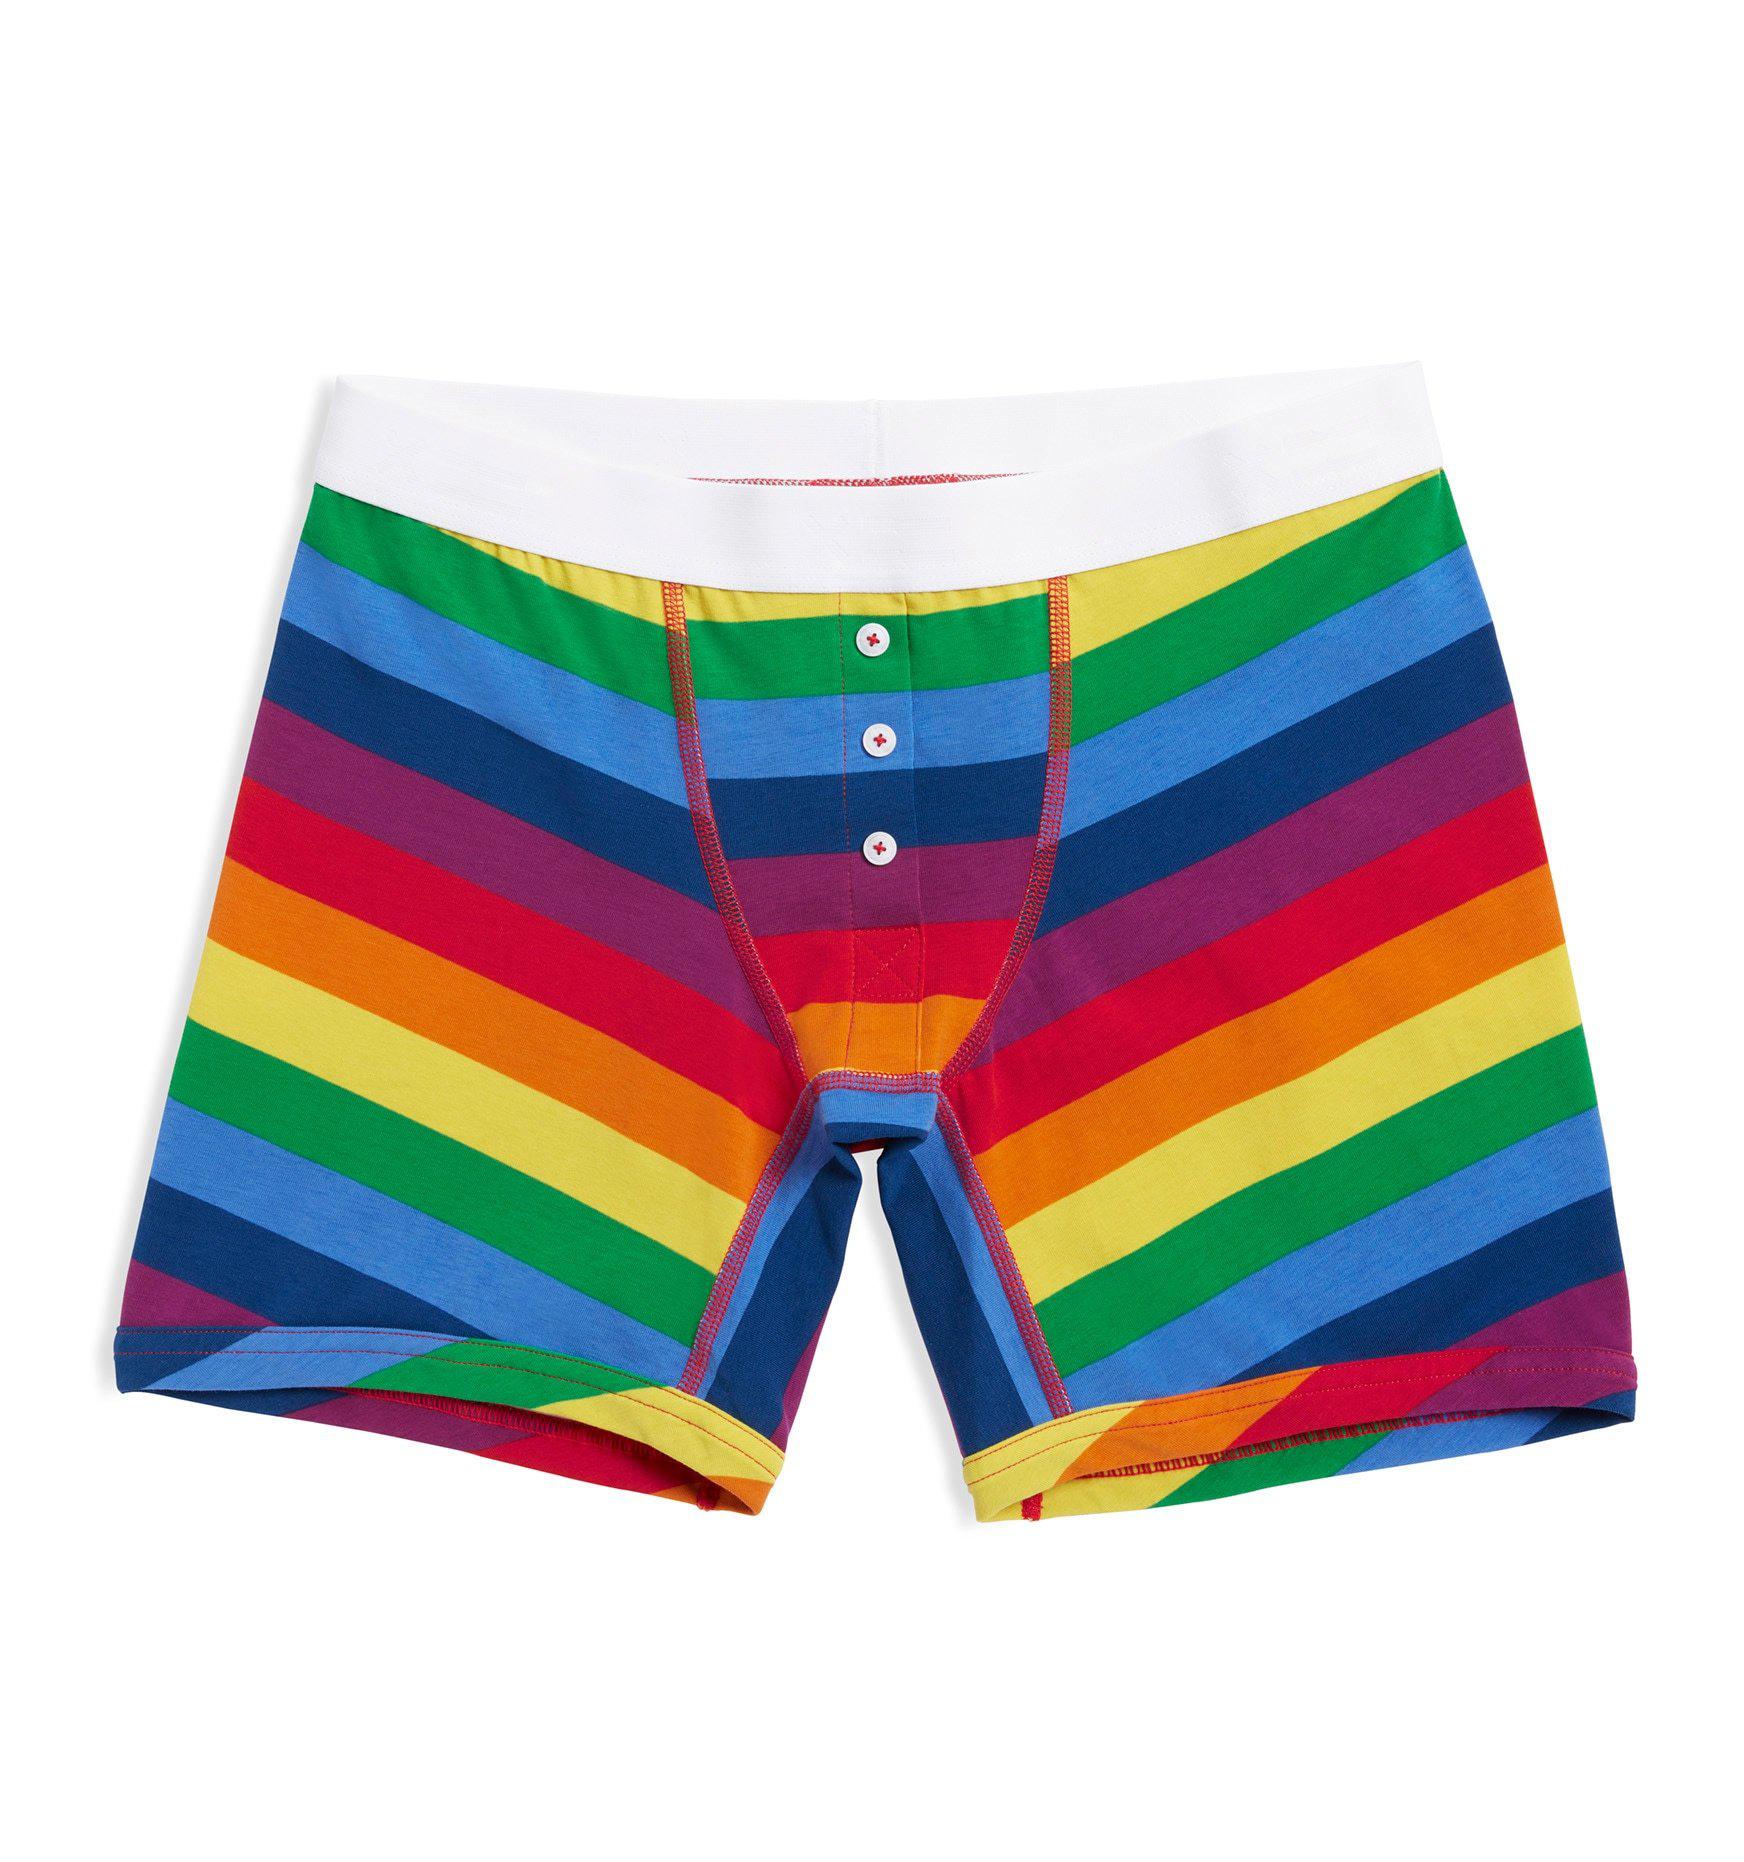 TomboyX, Intimates & Sleepwear, Tomboy X Racerback Soft Bra Rainbow Pride  Stripes Size 2x